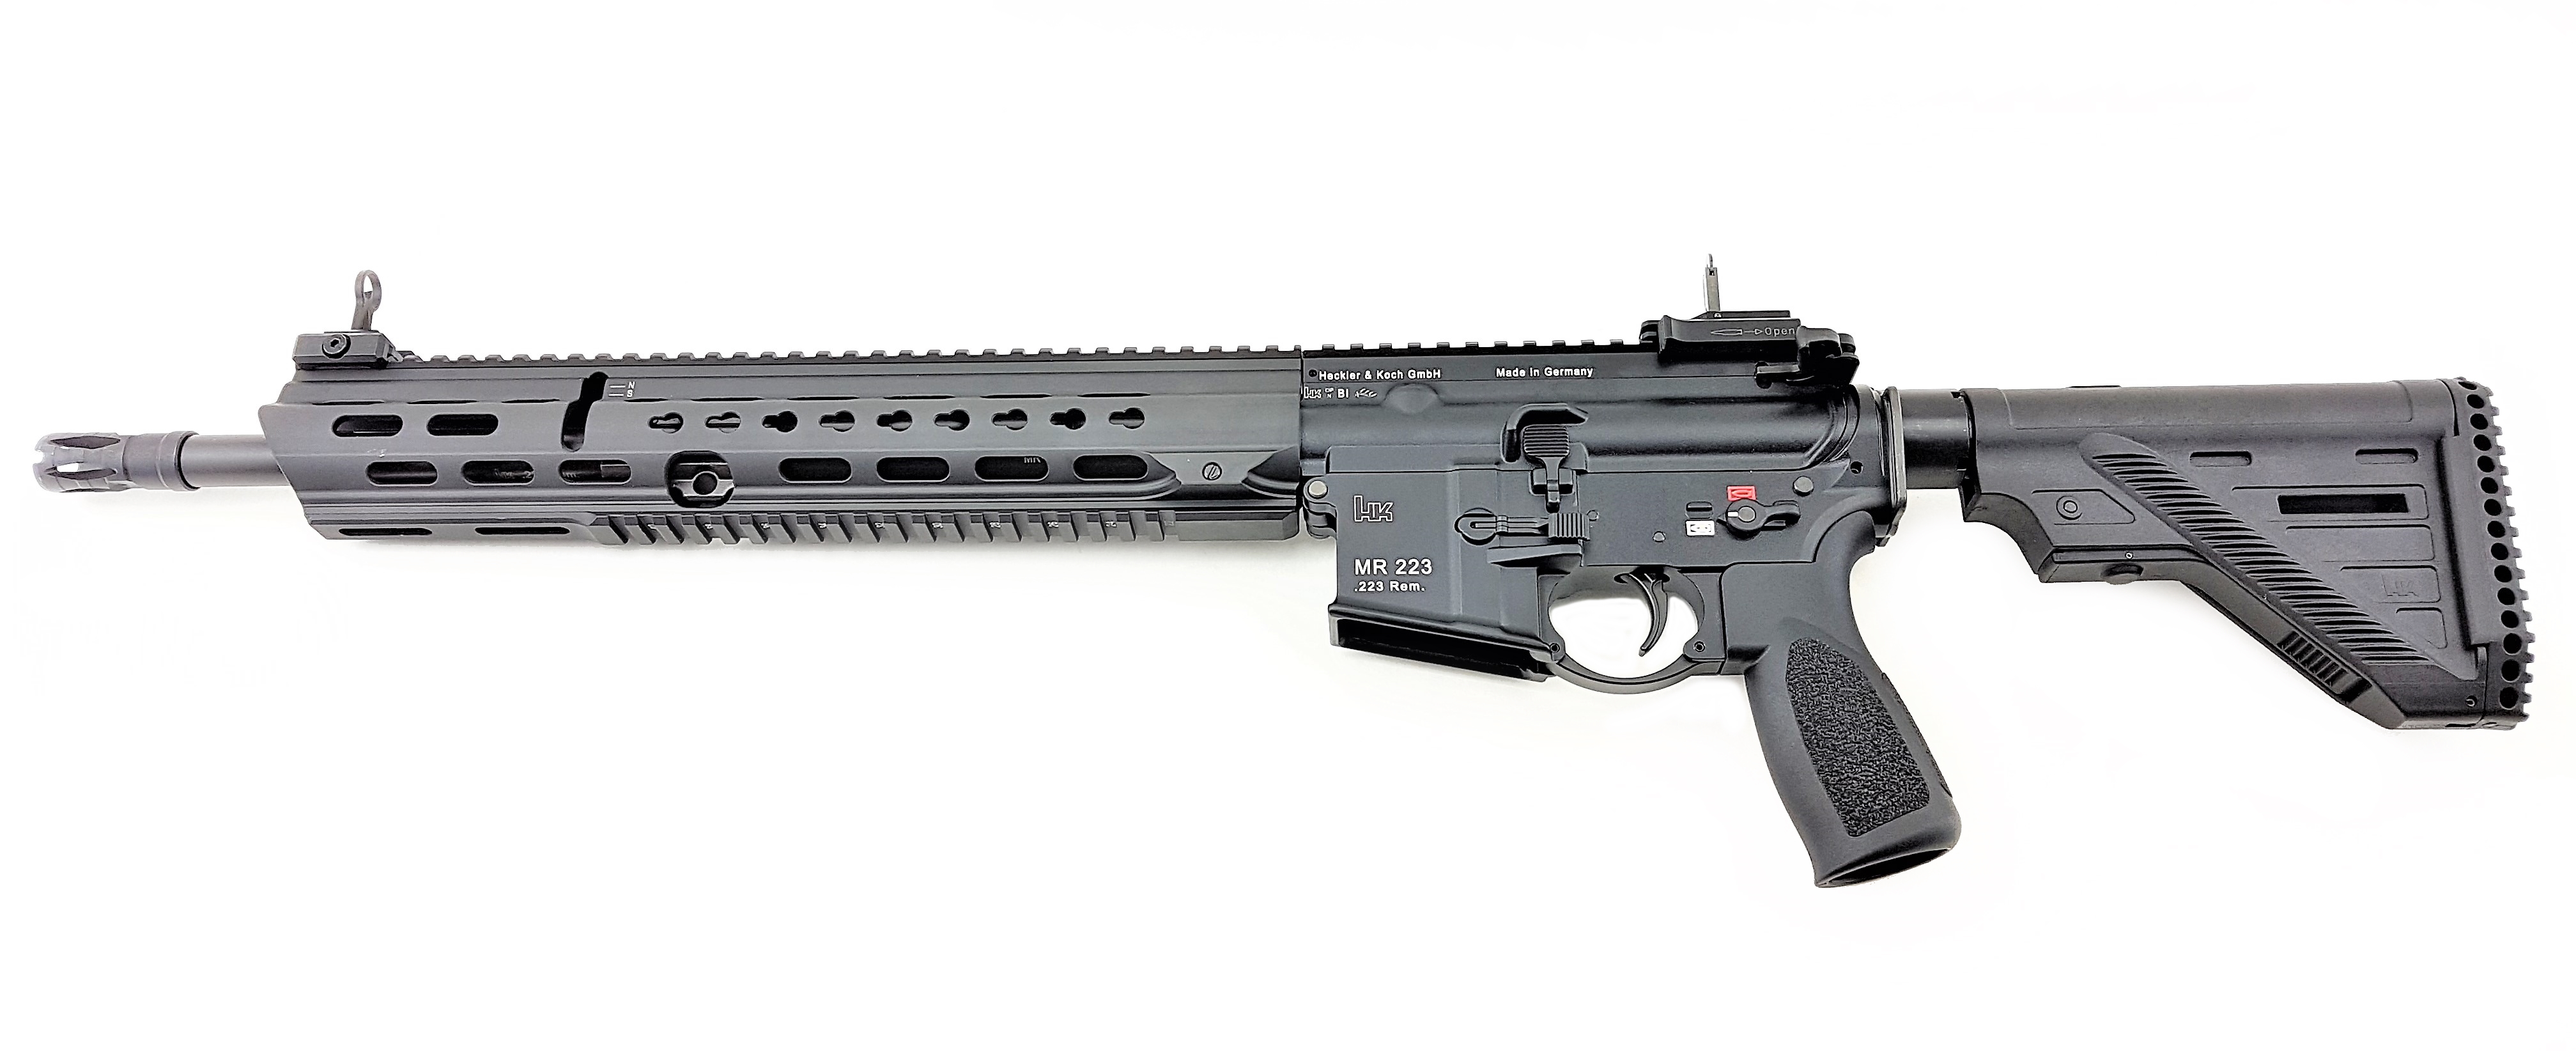 HK MR223 mit langer Slim Line Handschutz | F.A.S.T. Onlineshop